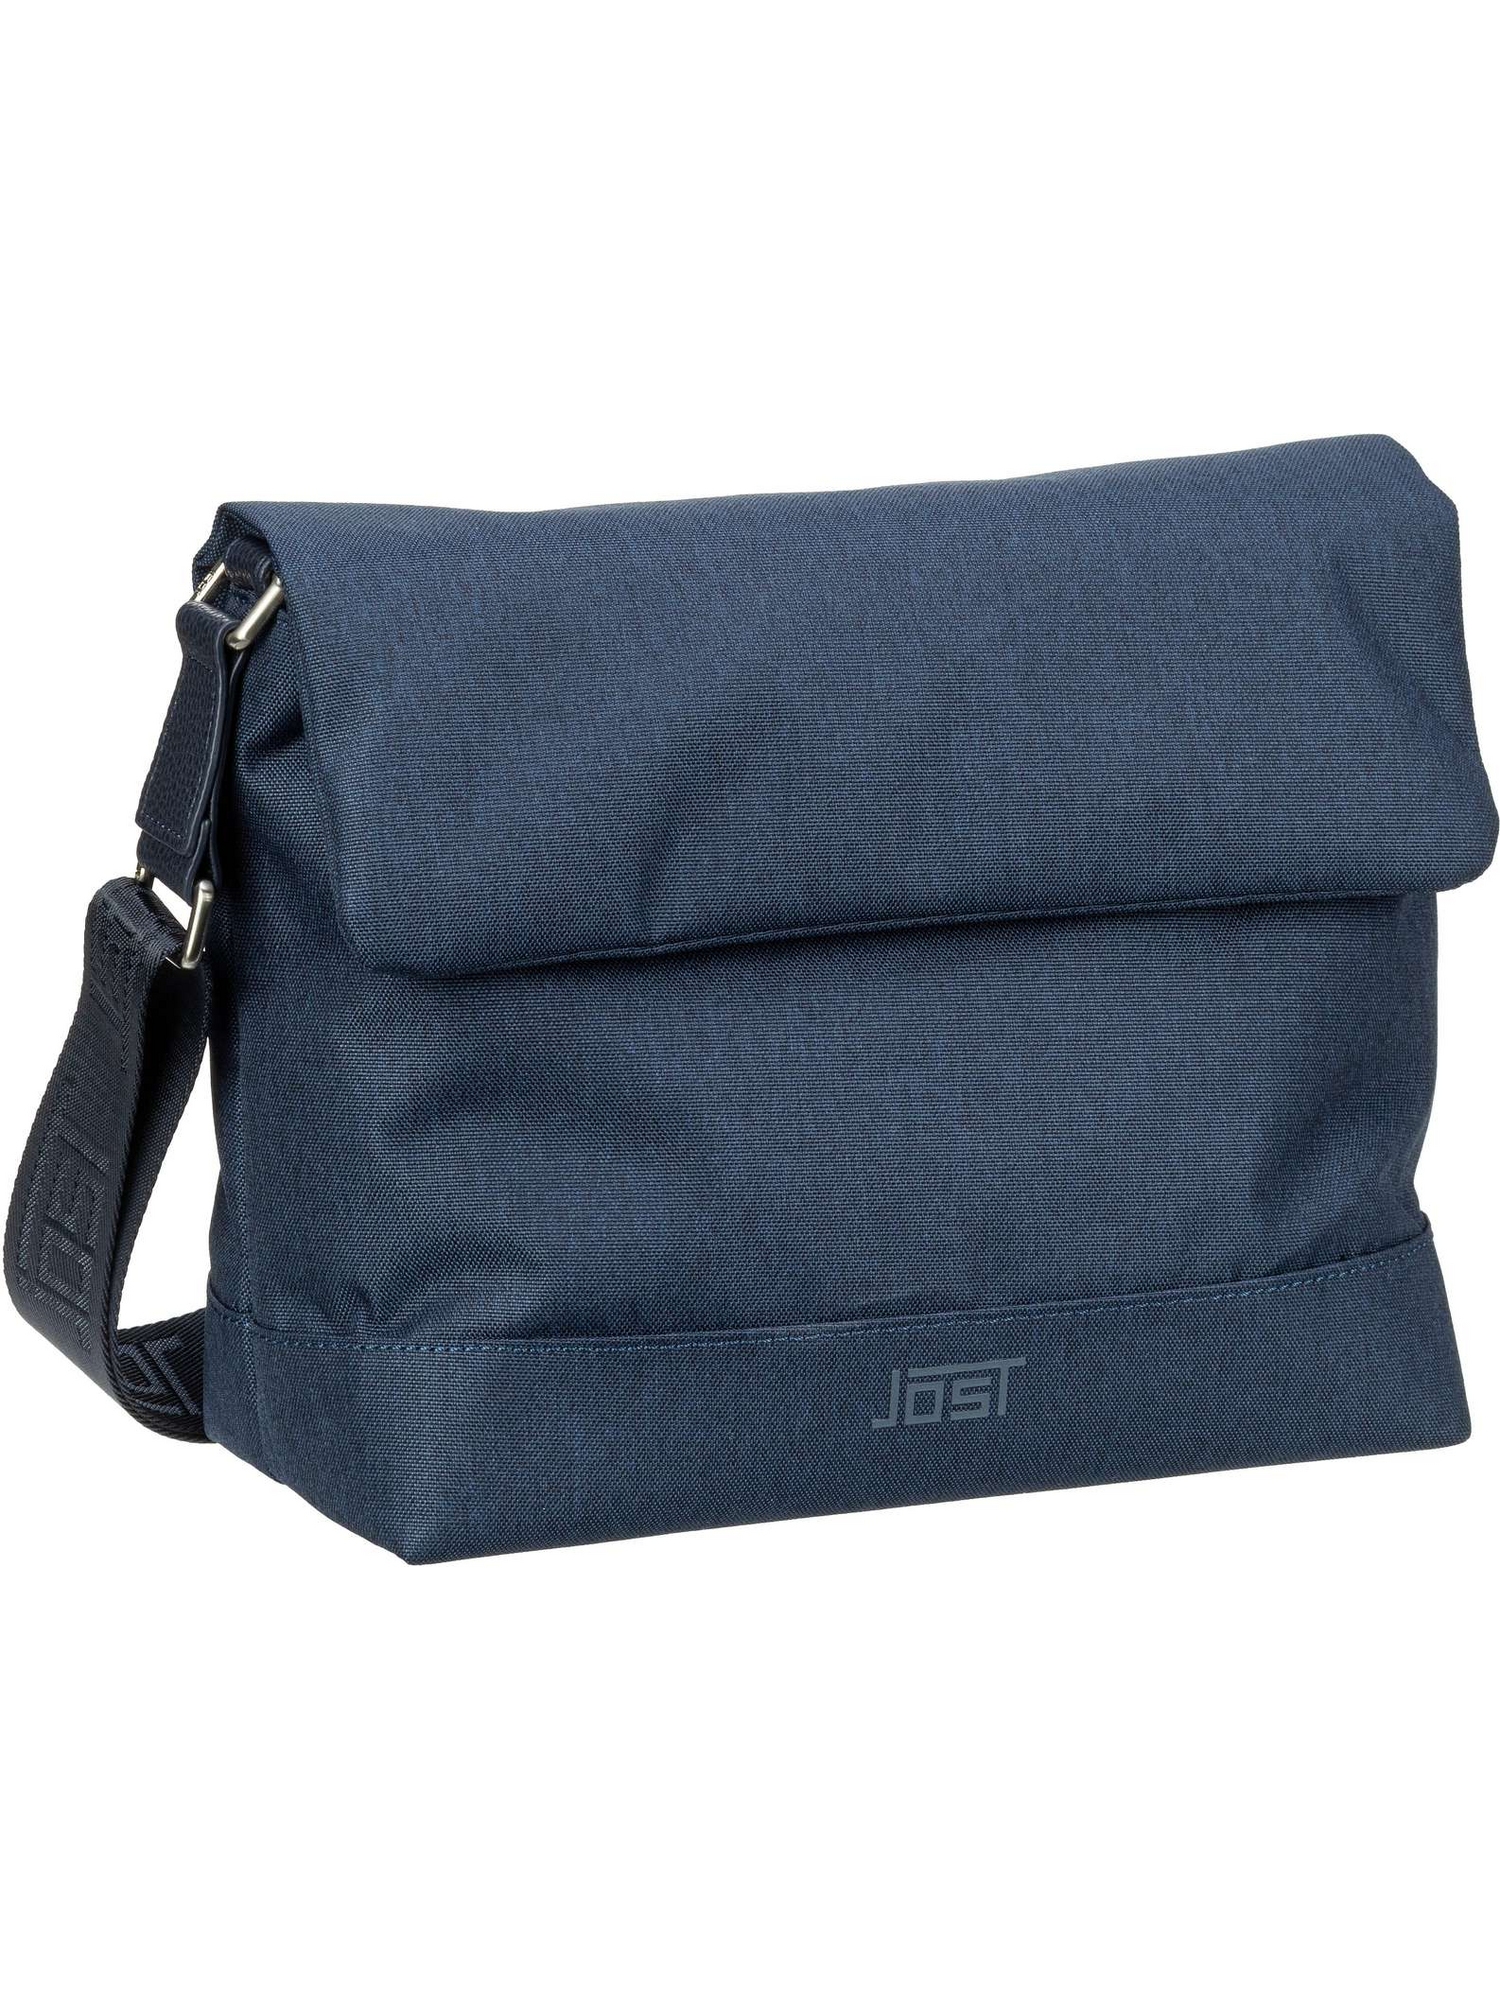 Сумка через плечо Jost Umhängetasche Bergen Shoulder Bag, темно-синий